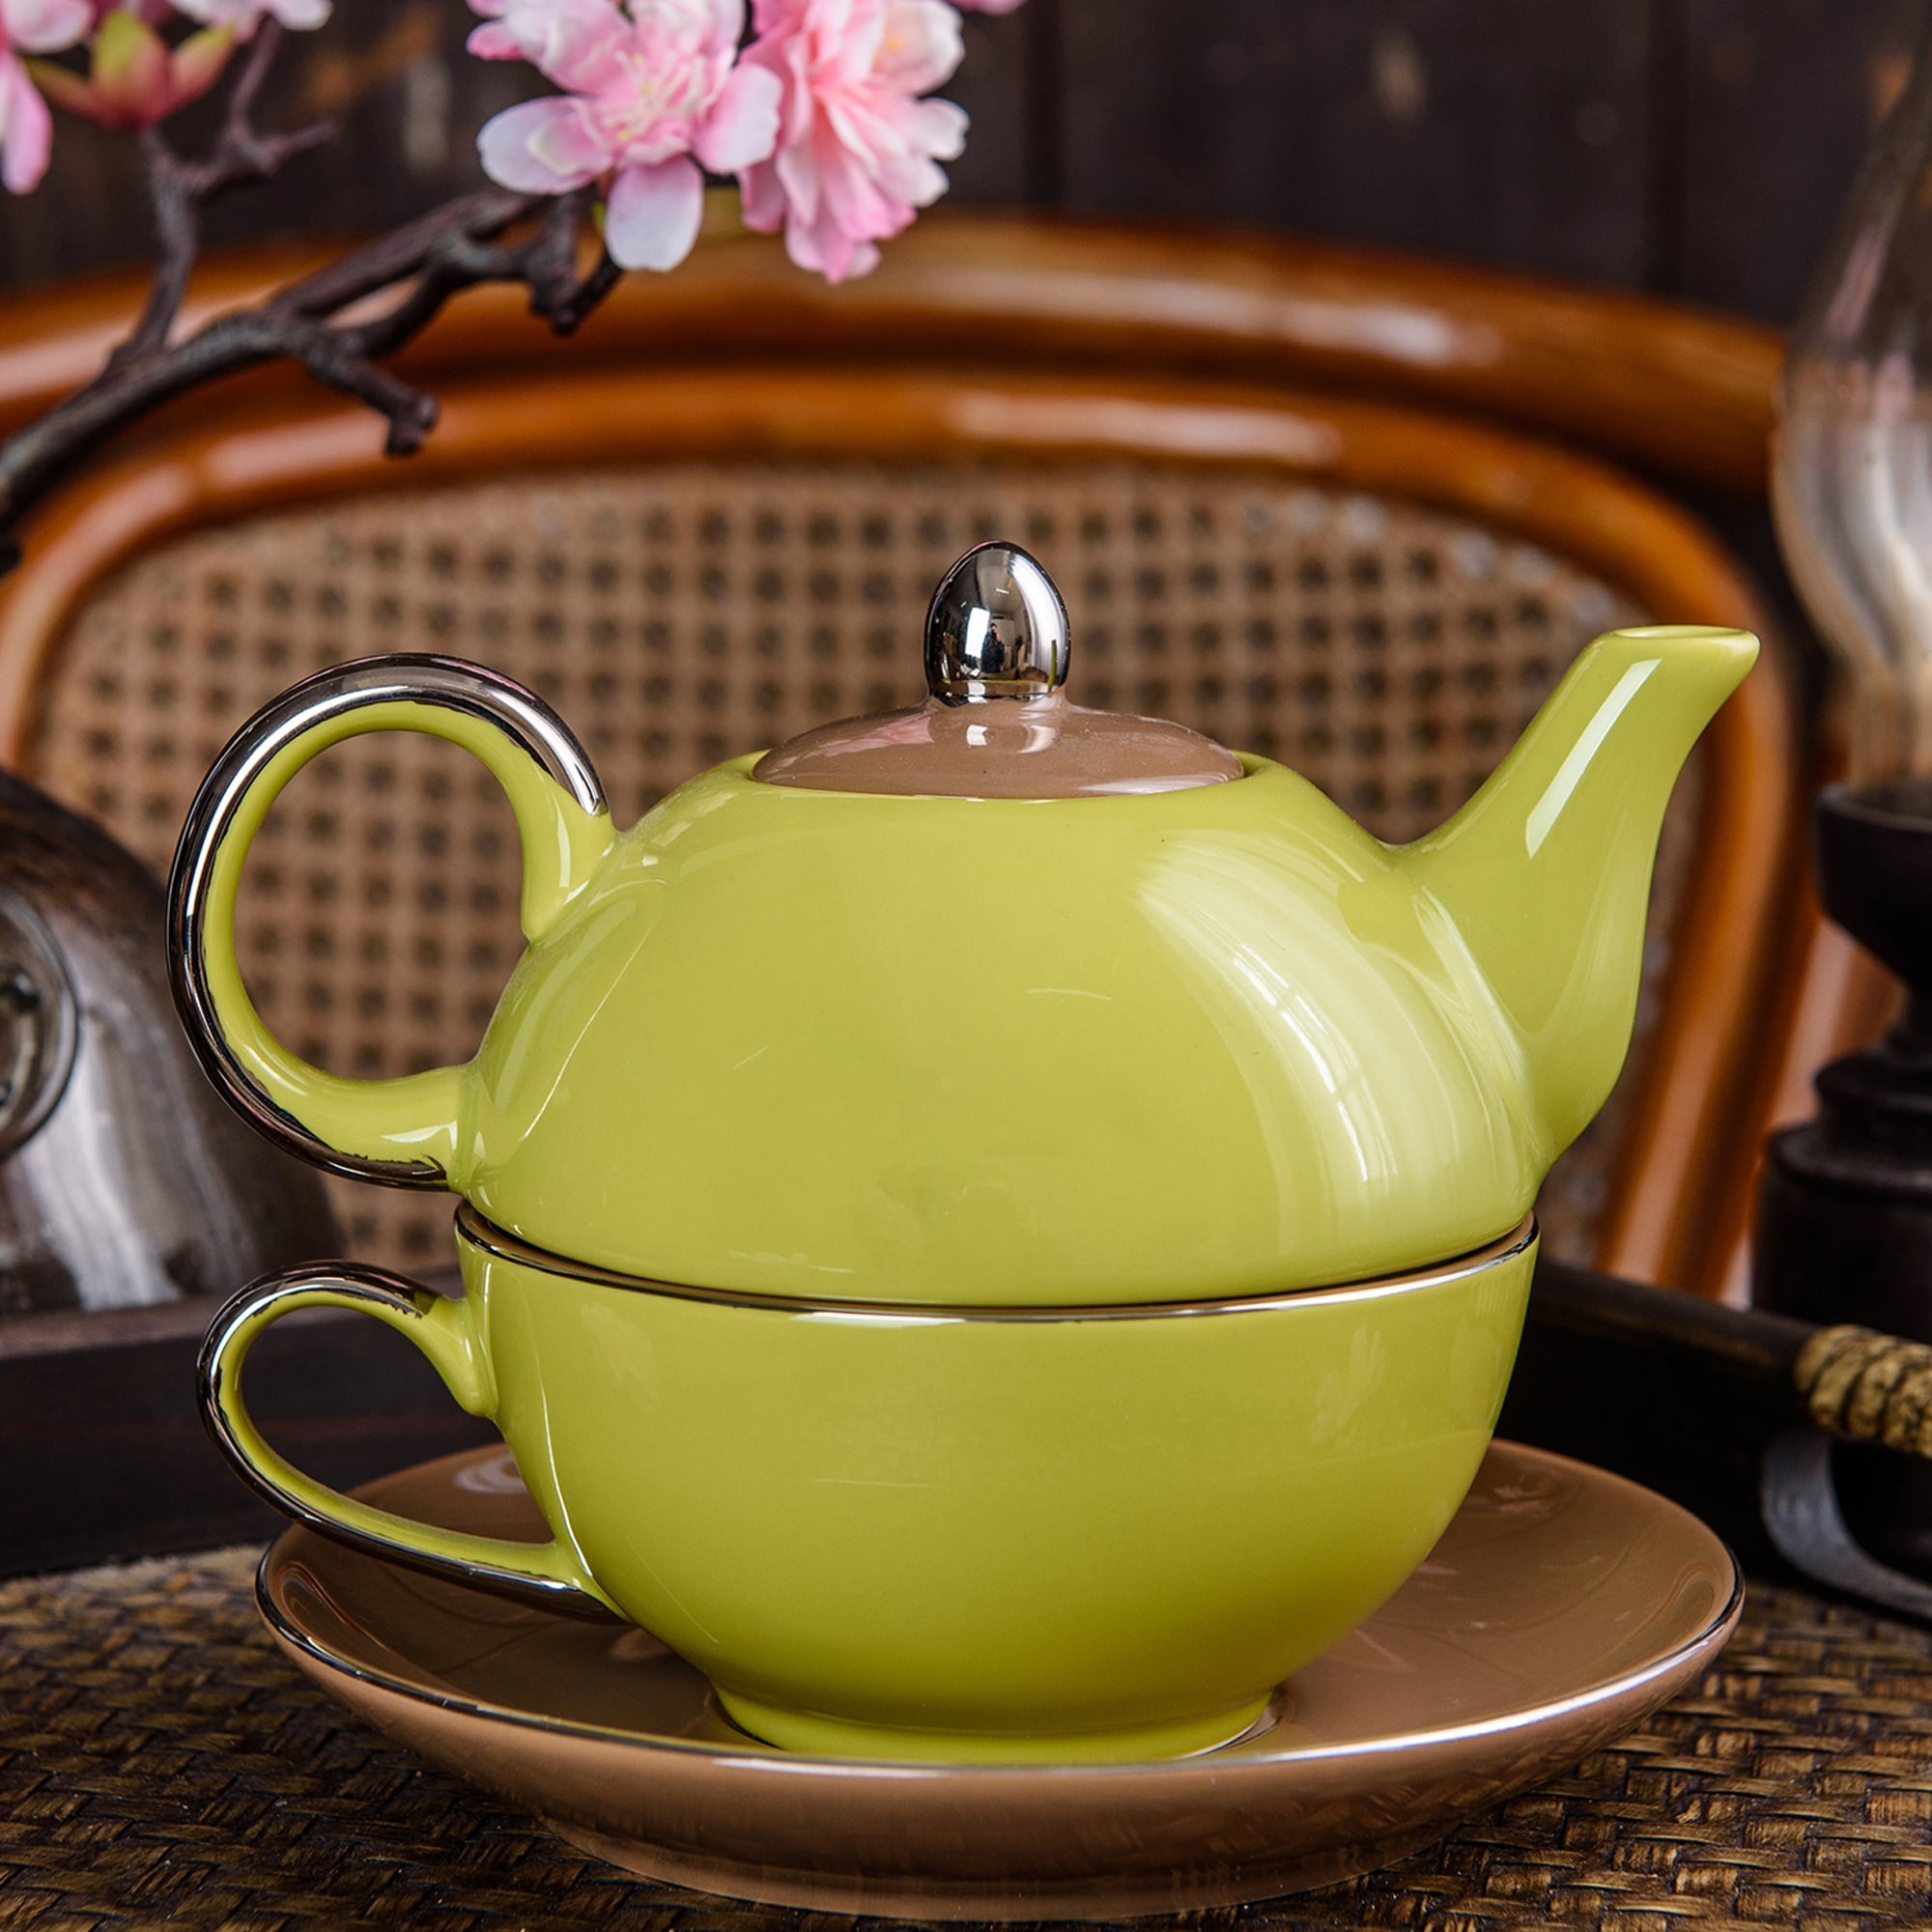 Porcelain Tea Pot Set for One Yellow Teapot Teacup and Saucer Set